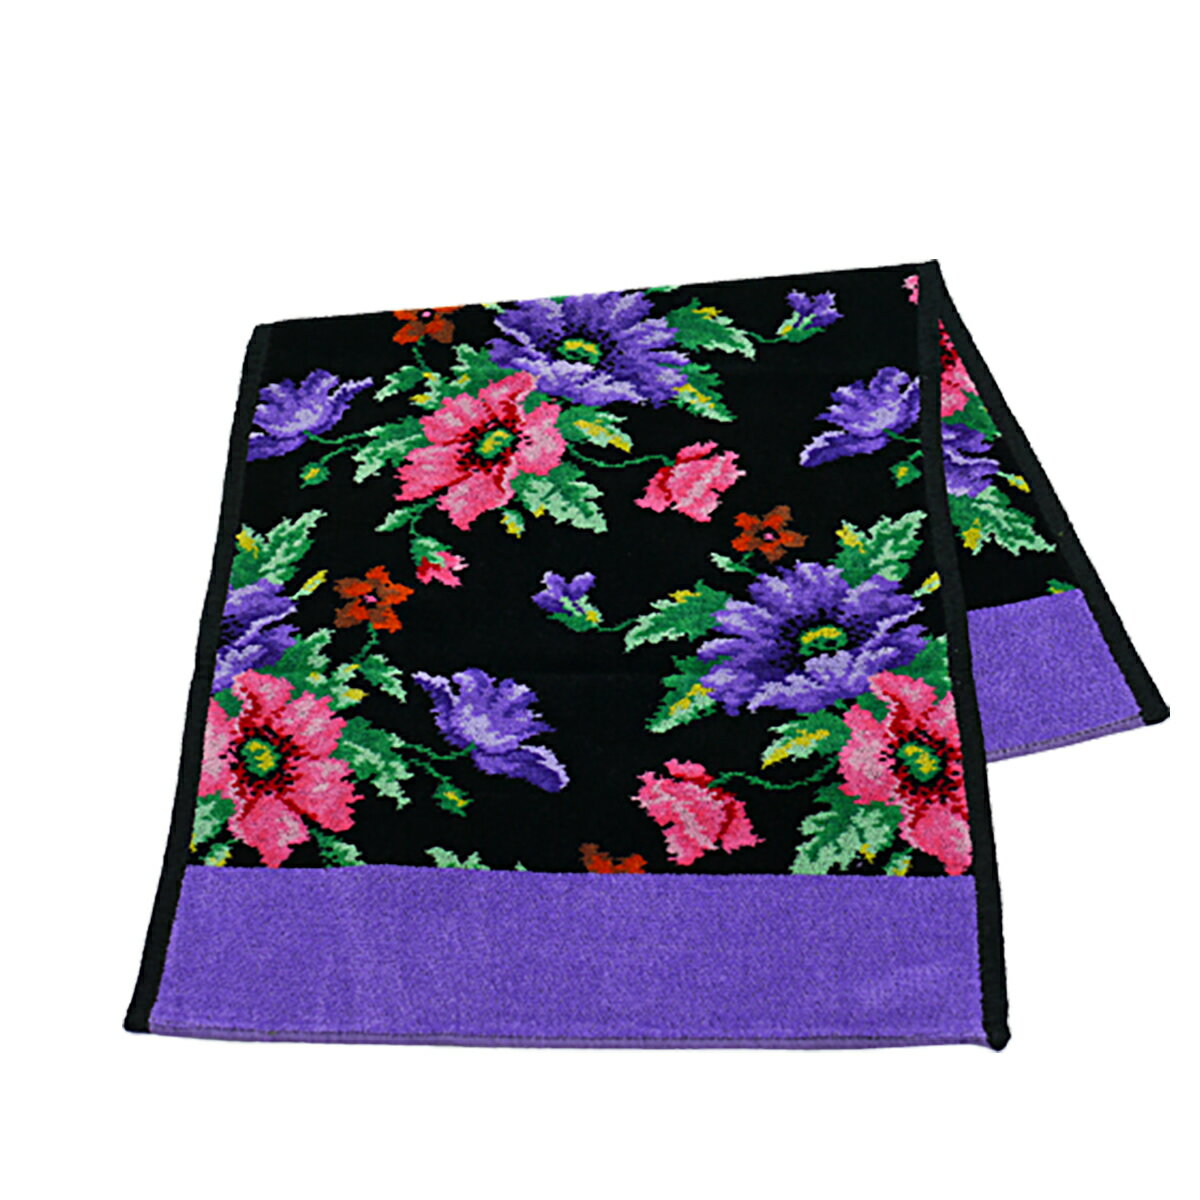 フェイラー ハンドタオル 37cm×80cm ポピーズ ブラック - パープル FEILER Chenille Guest Towel Poppies Black Purple シュニール織 シェニール織 ギフト のし可